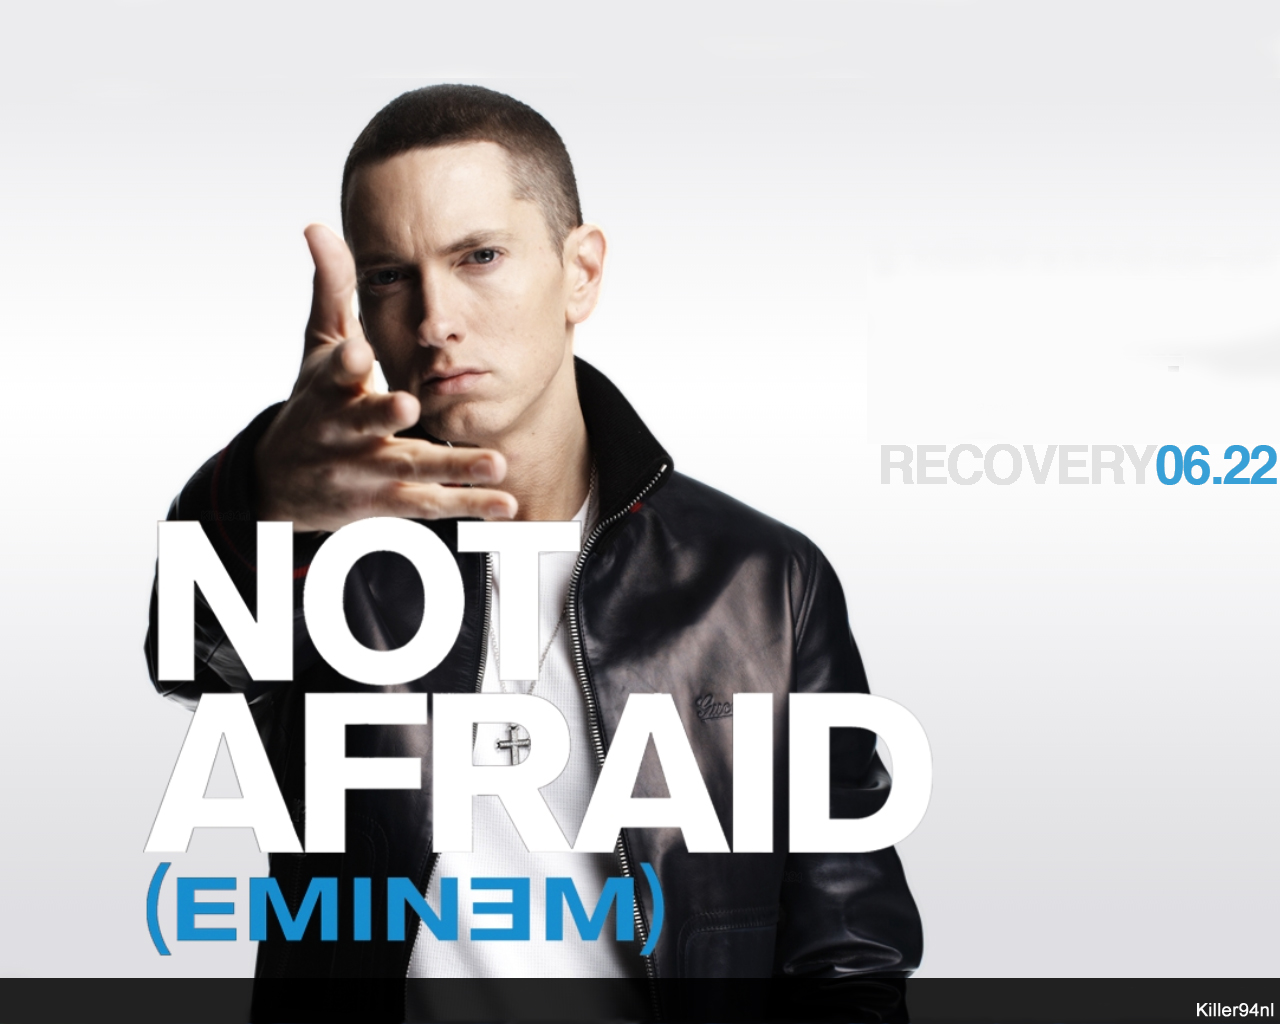 Melhores papéis de parede de Eminem para tela do telefone